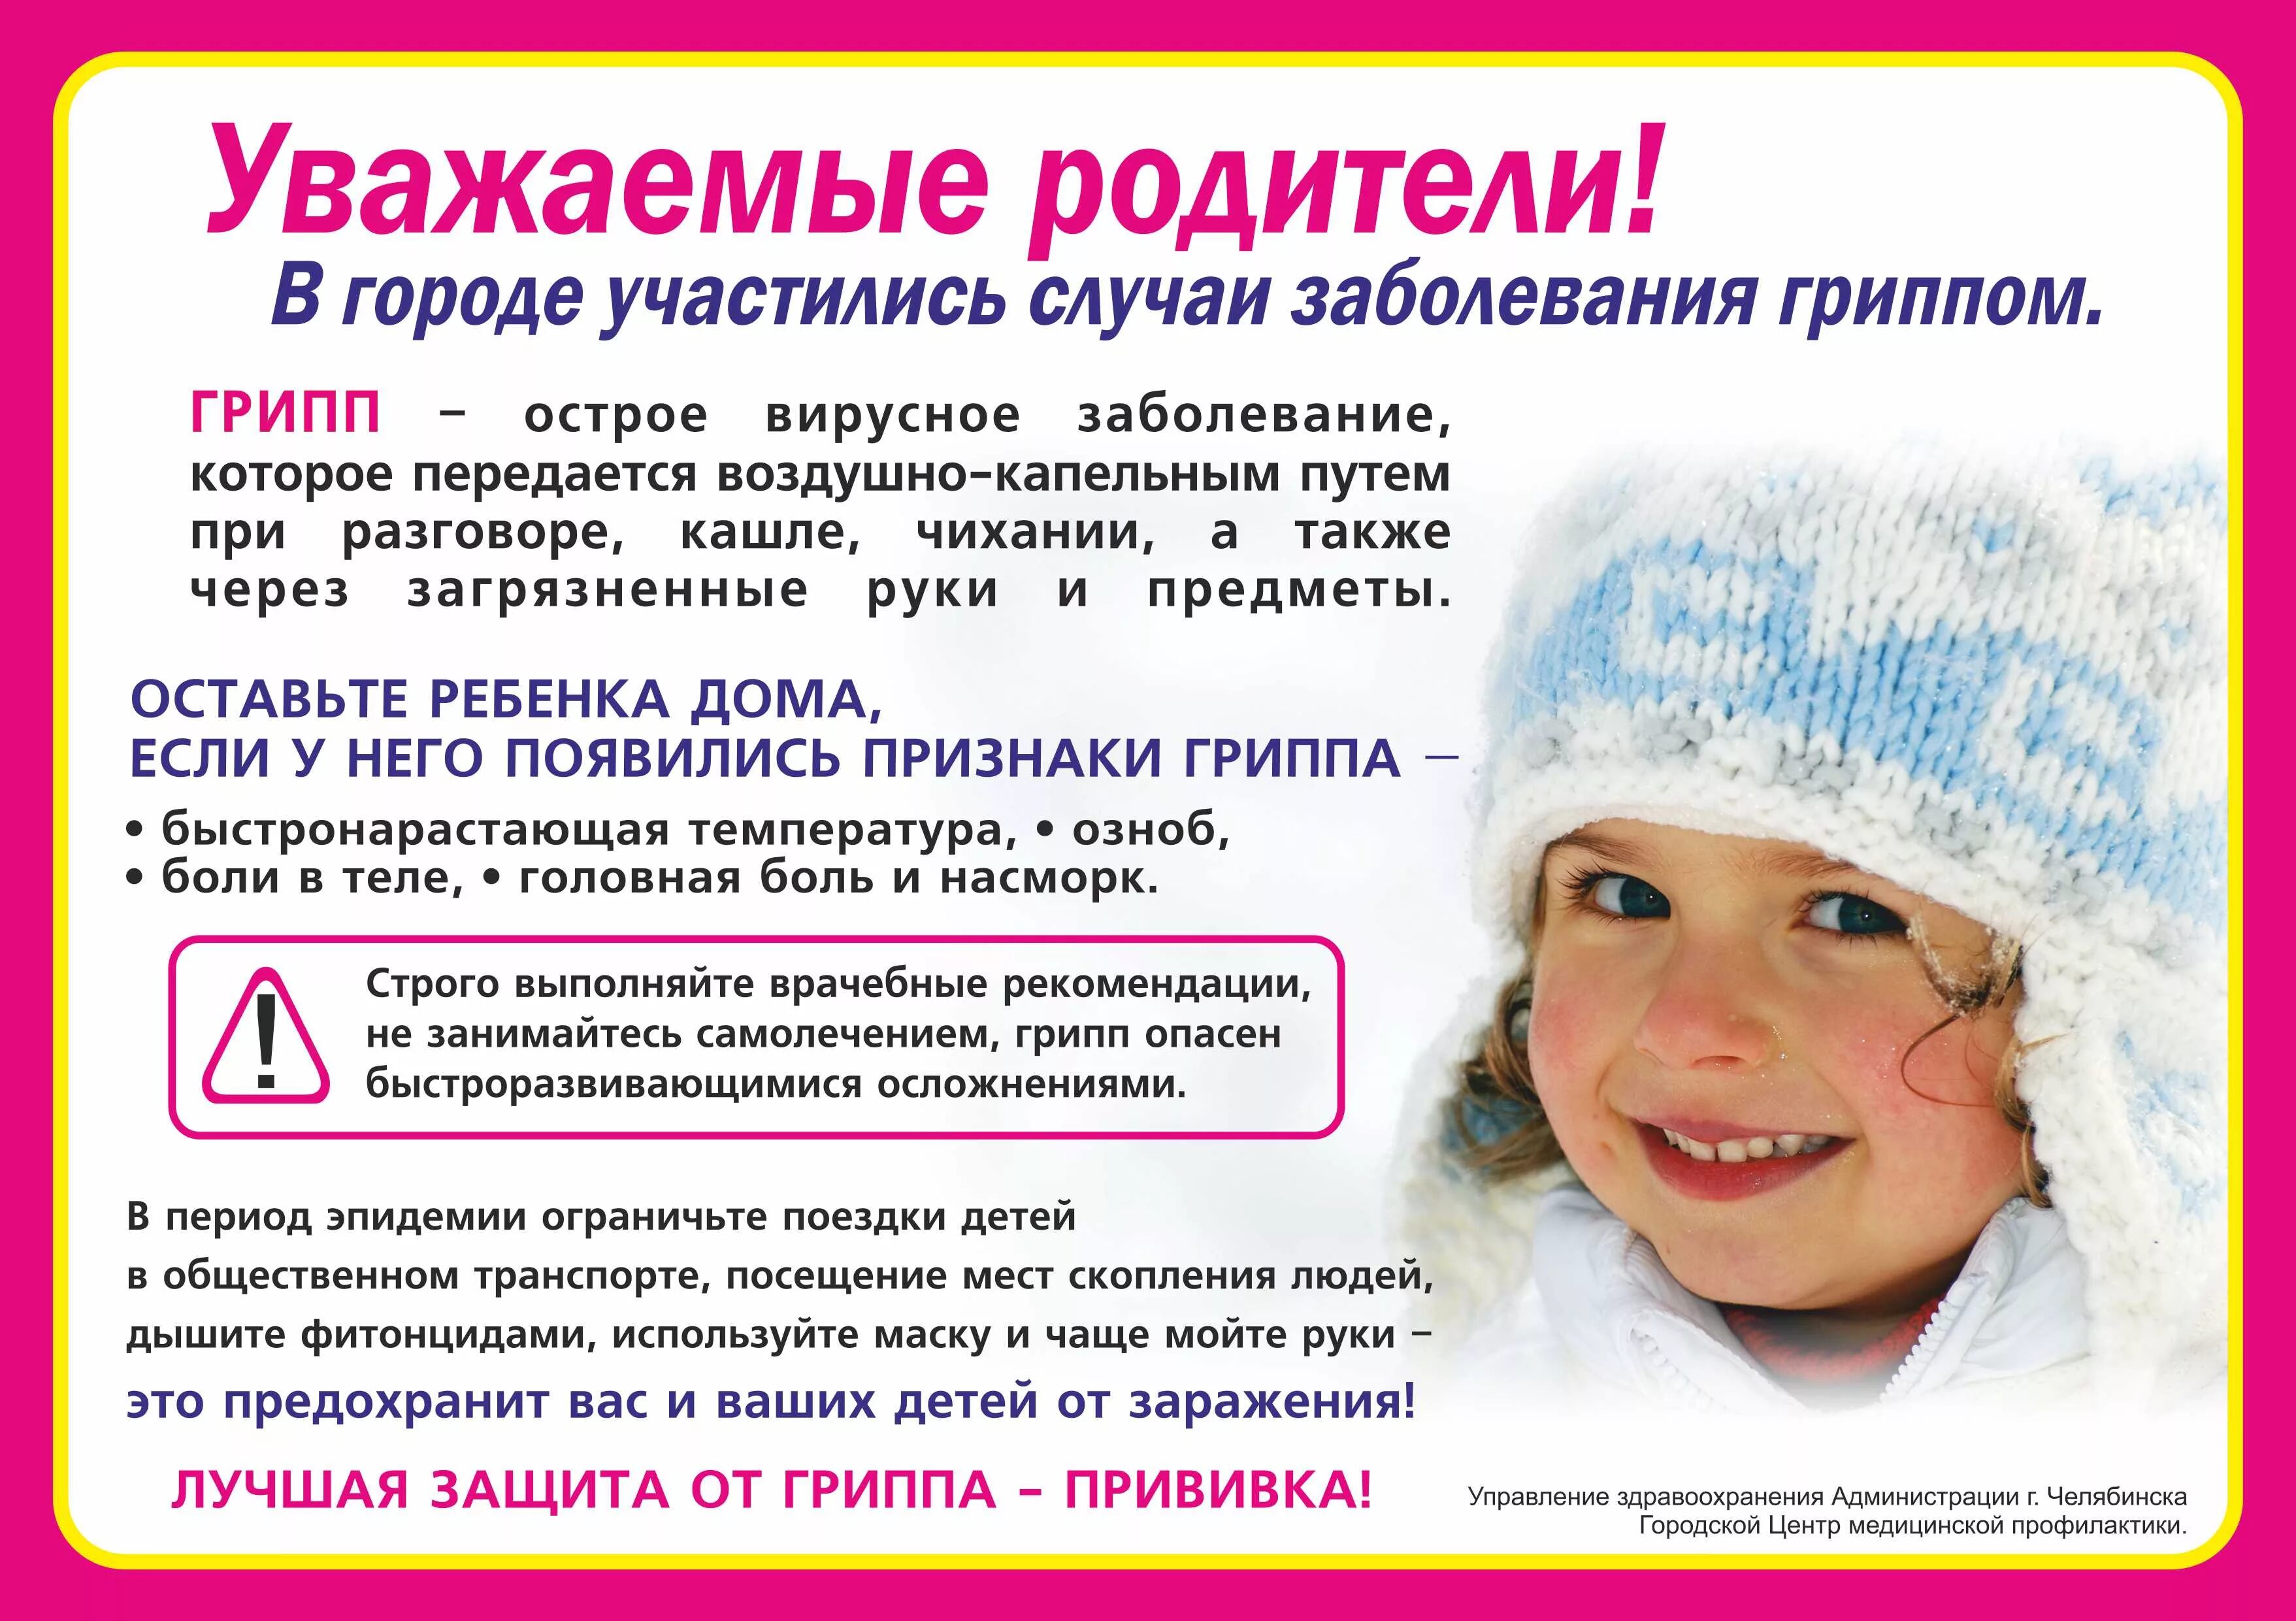 Профилактика простудных заболеваний зимой. Уважаемые родители дети с признаками ОРВИ. Профилактика при гриппе. Профилактика ОРВИ памятка.